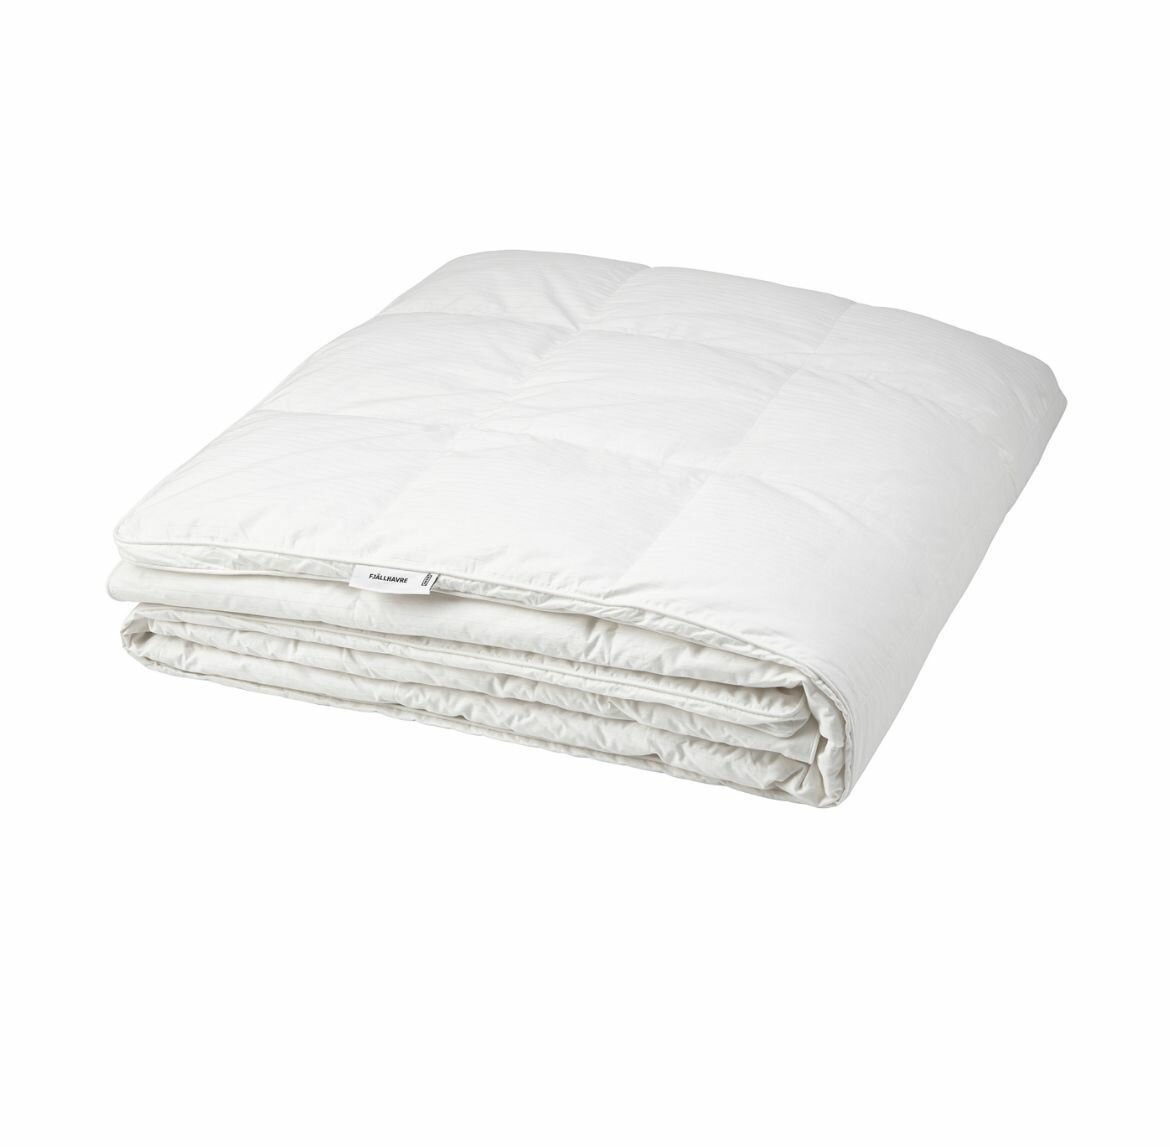 FJALLHAVRE Стеганое одеяло IKEA, теплое, размер 150x200 см - фотография № 1